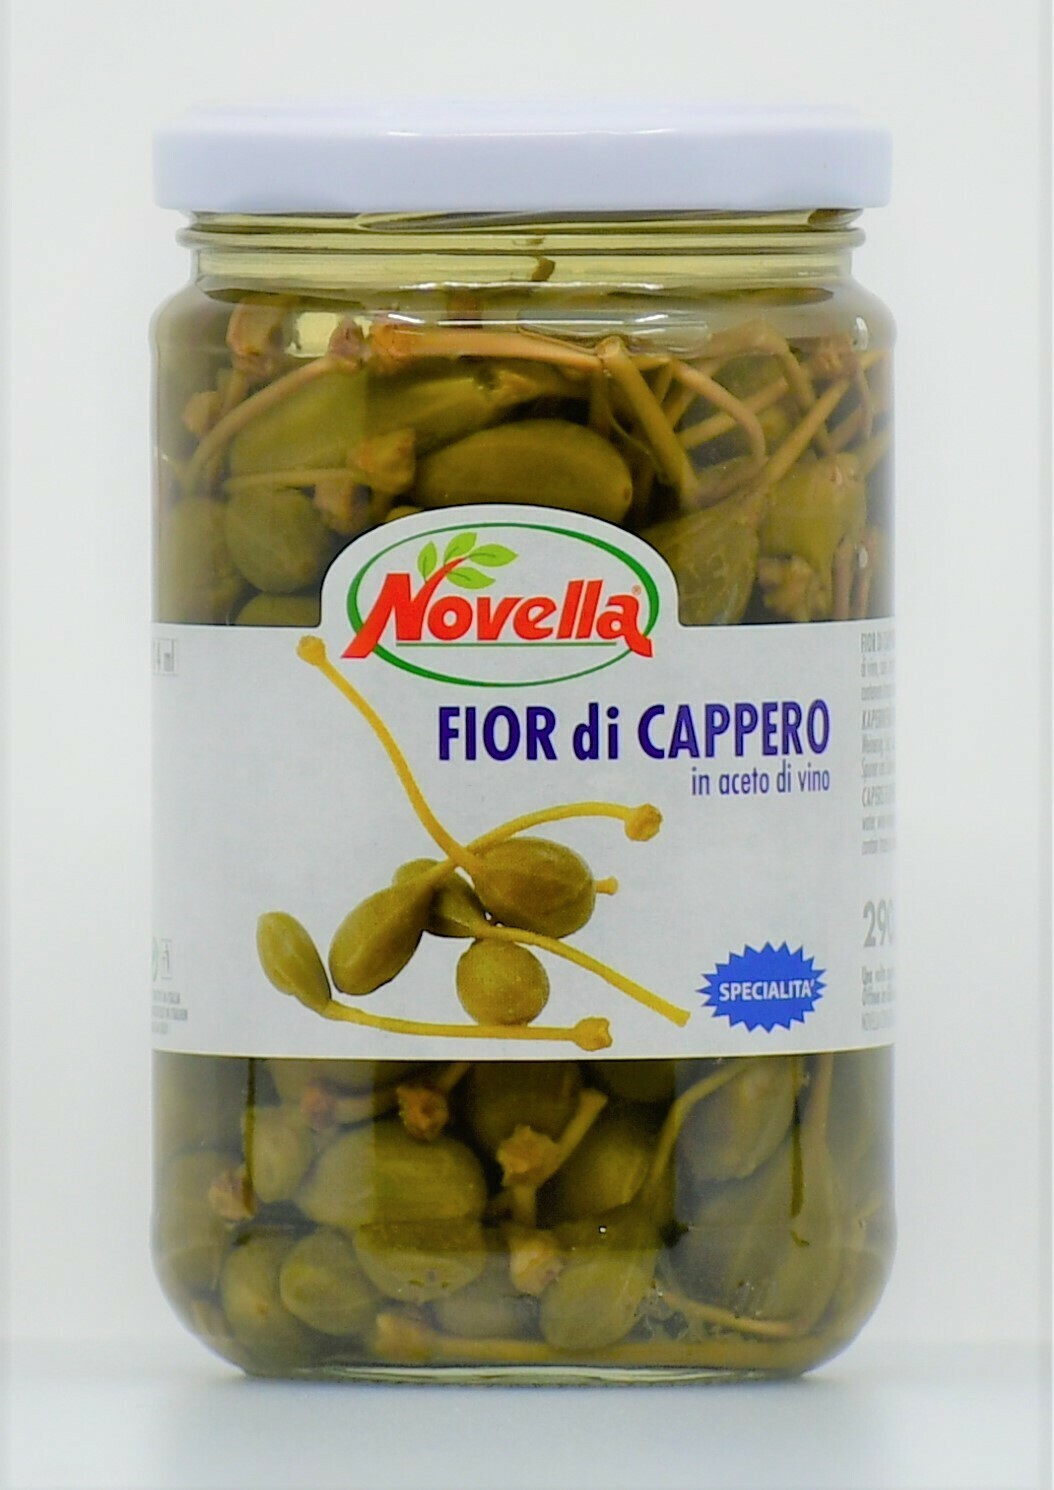 Capers flowers in vinegar 314 ml